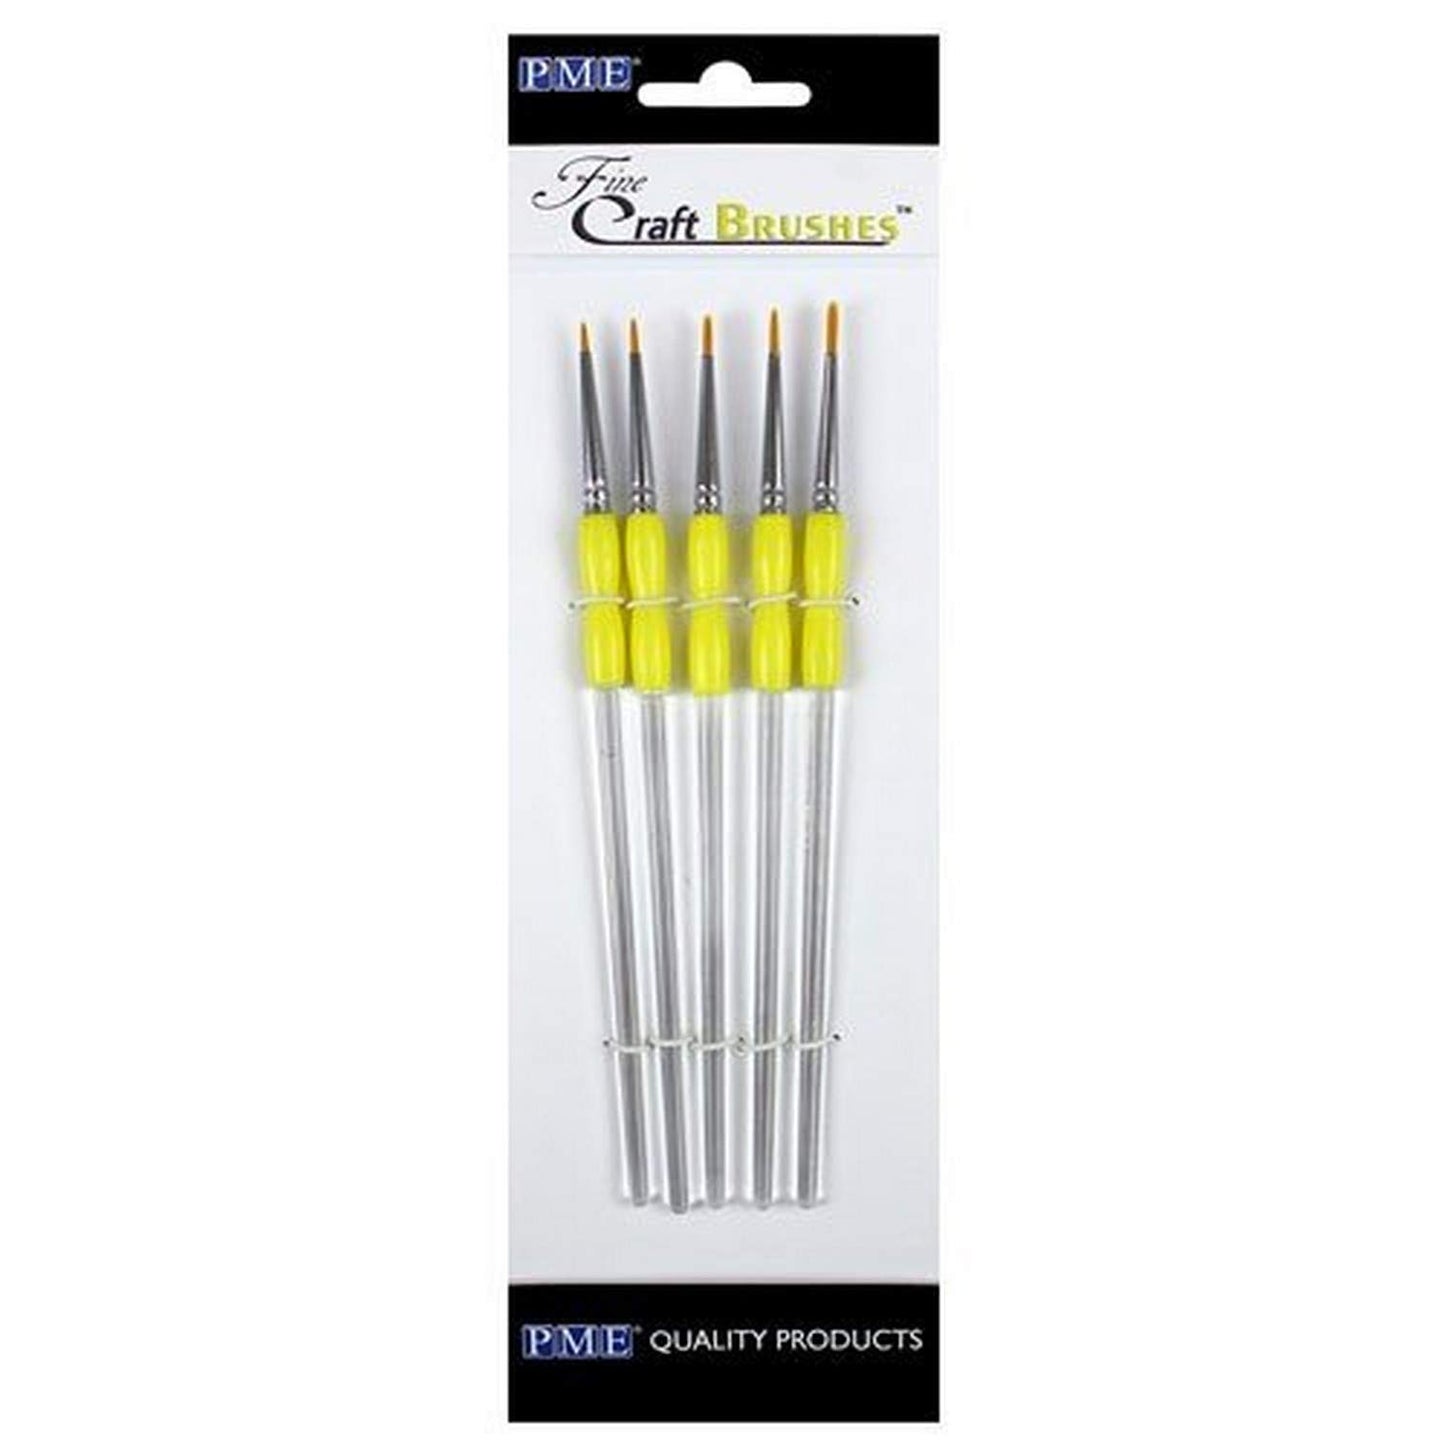 Craft Brushes - Fine - Set of 5